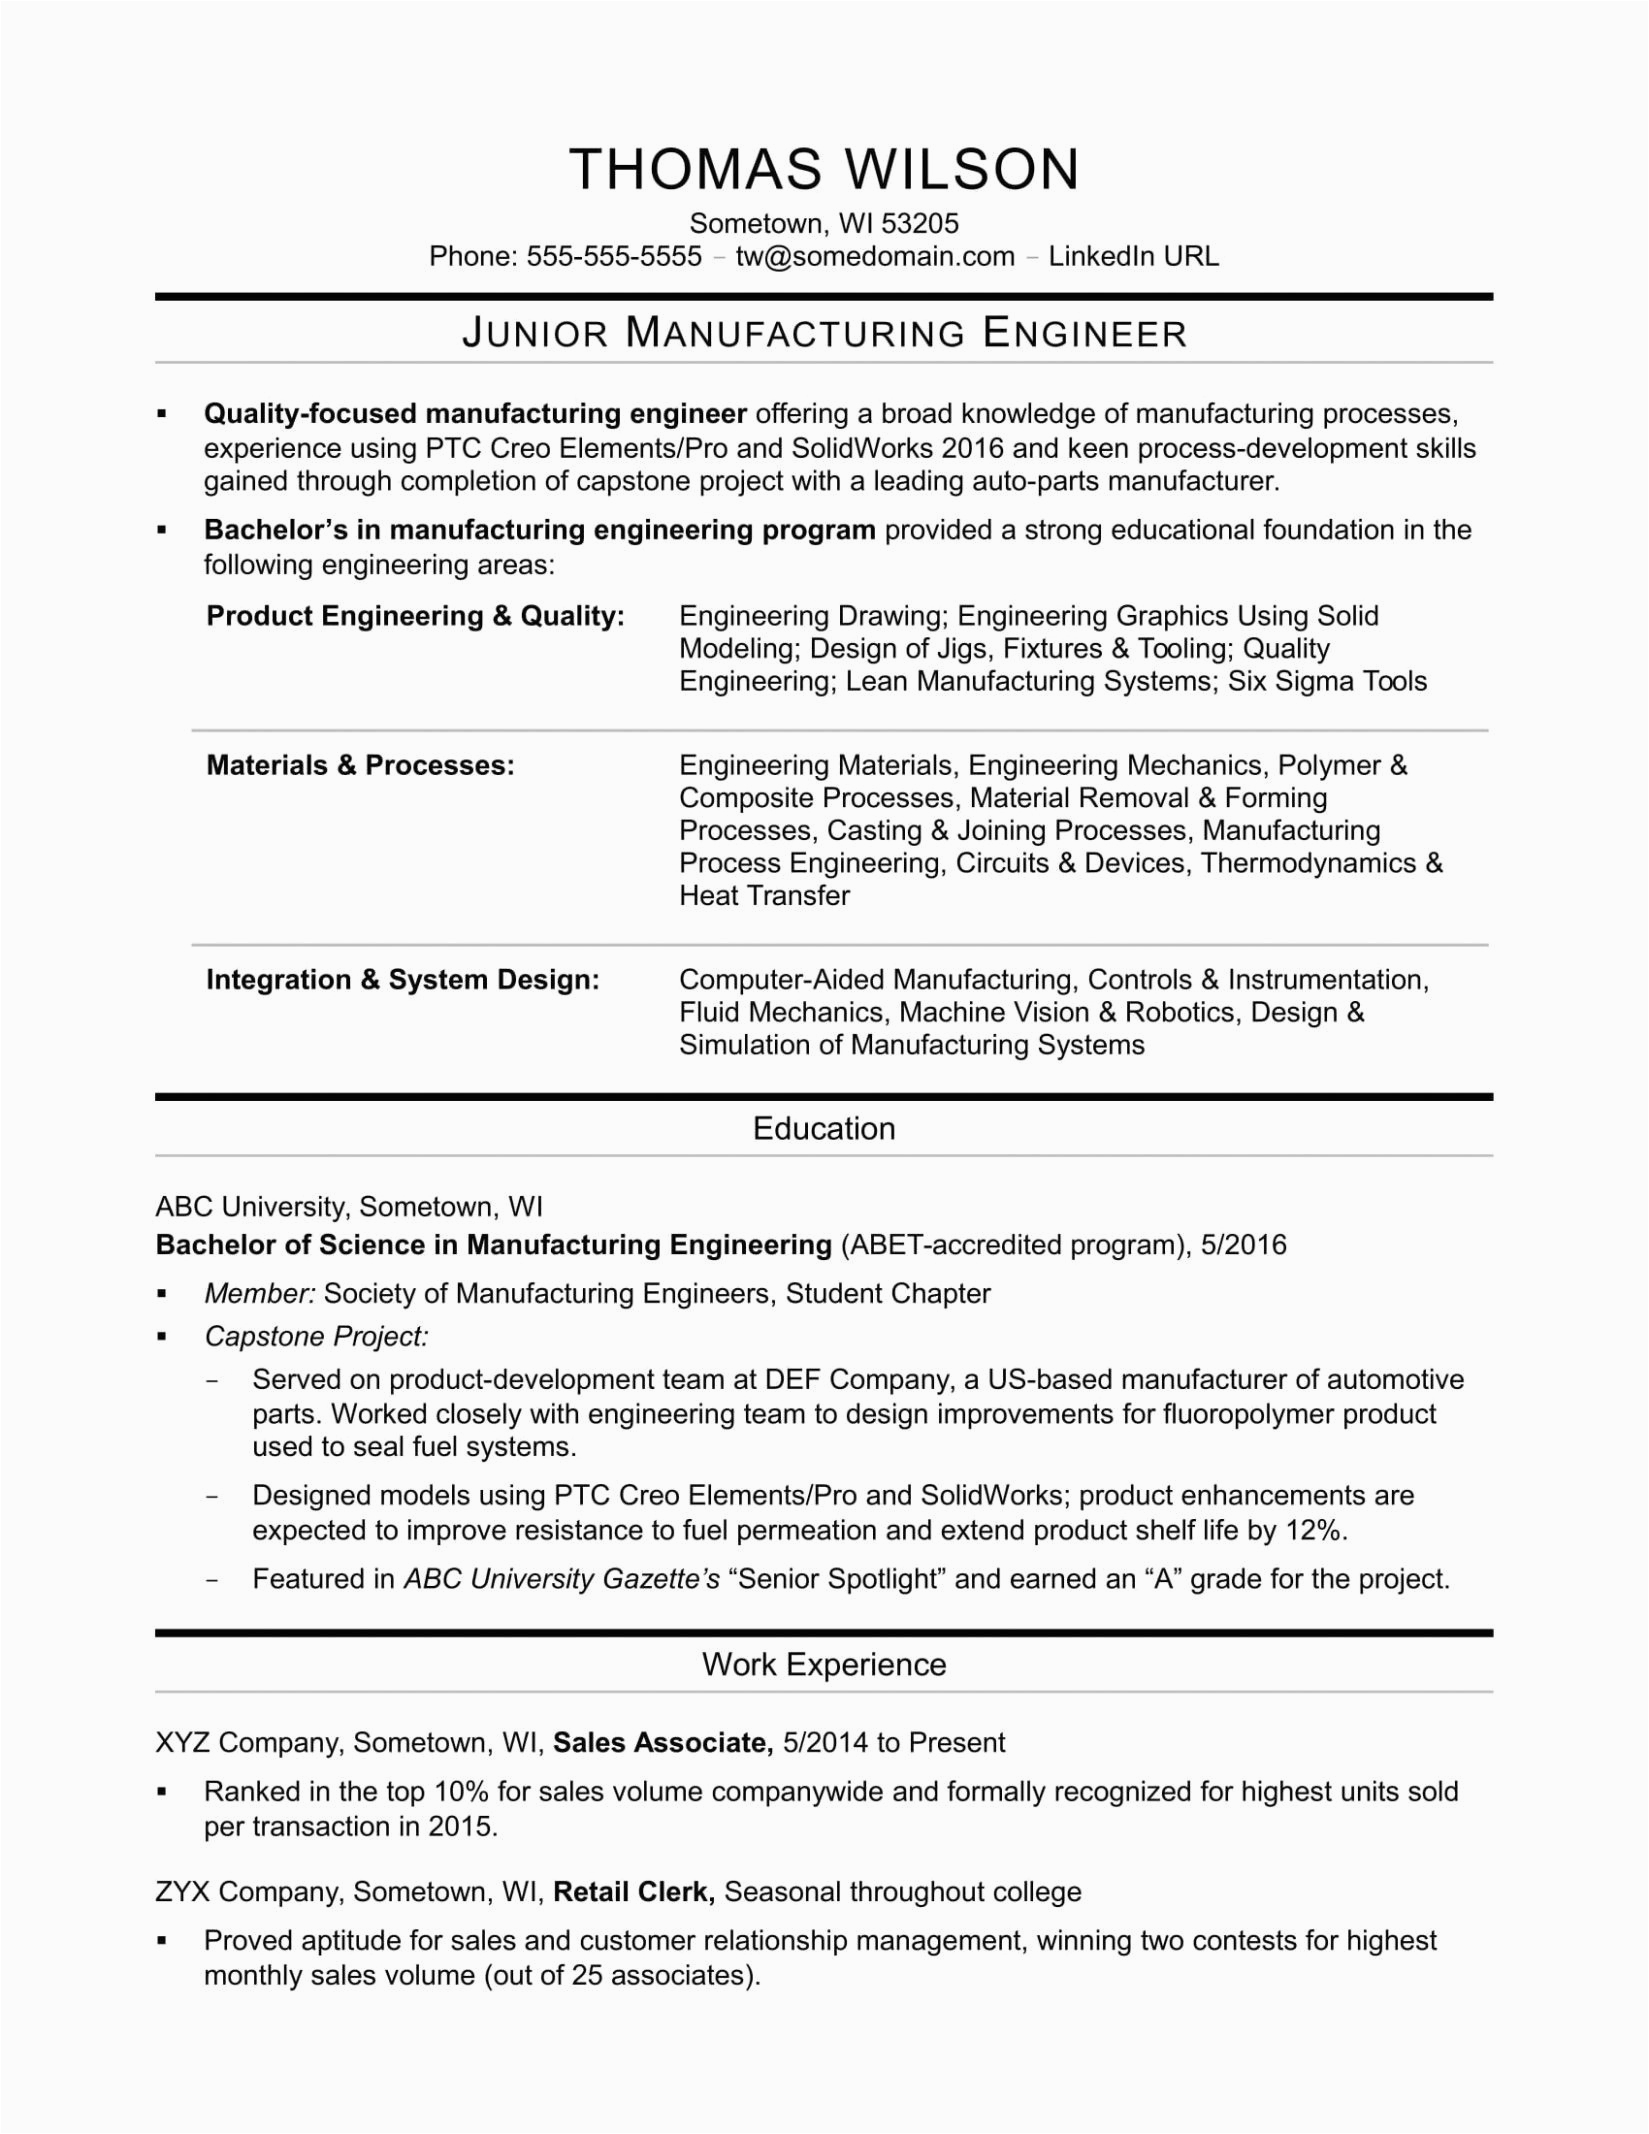 Sample Resume for Devops Engineer Fresher Devops Engineer Resume for Fresher Best Resume Examples